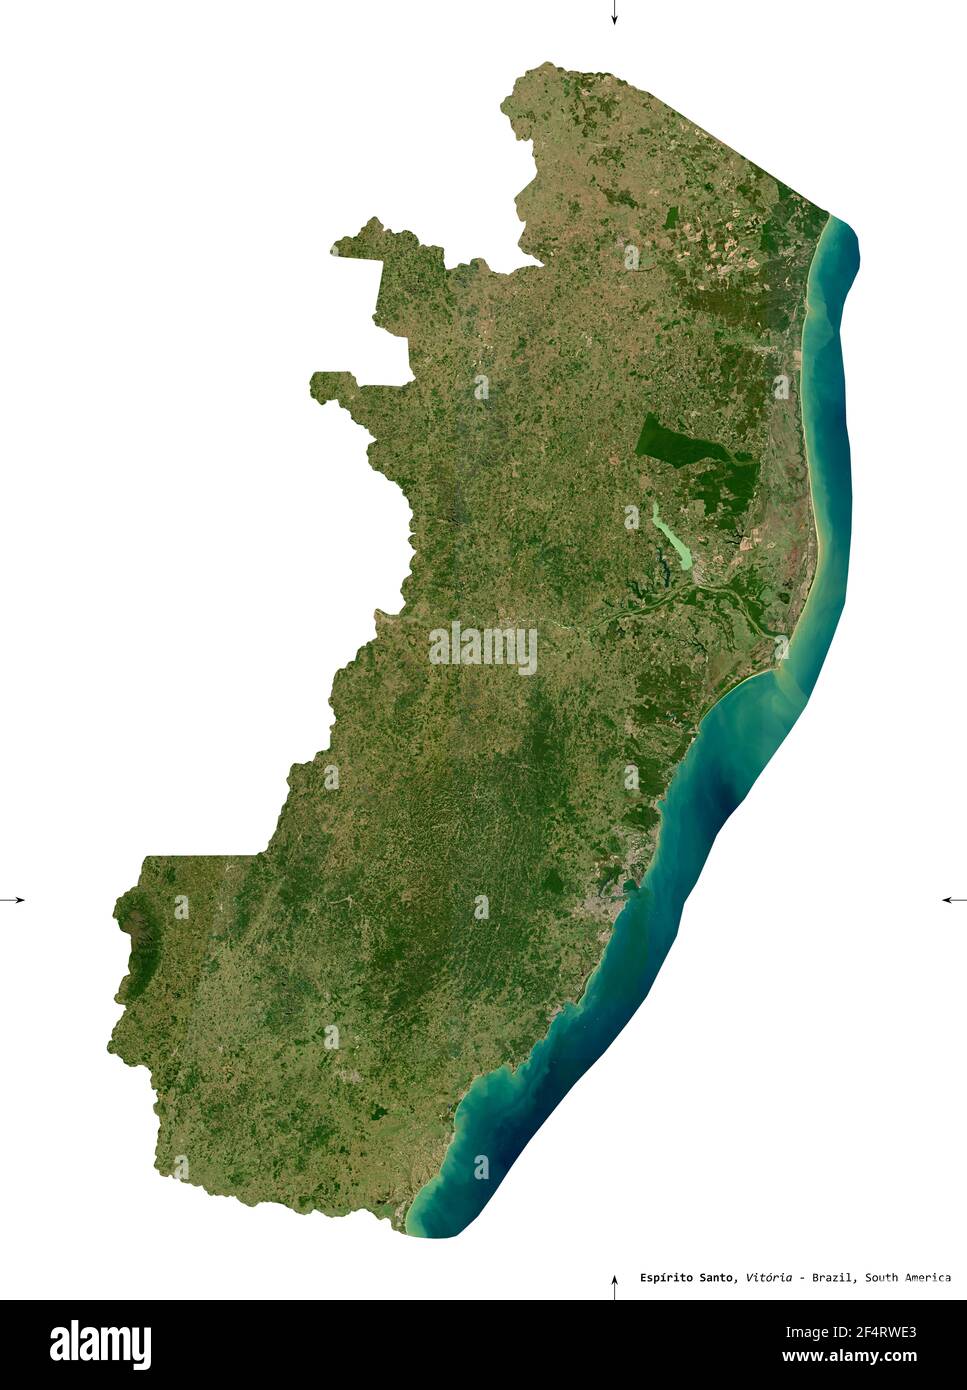 Espirito Santo, estado de Brasil. Imágenes de satélite Sentinel-2. Forma aislada sobre sólido blanco. Descripción, ubicación de la capital. Contiene modificado Foto de stock